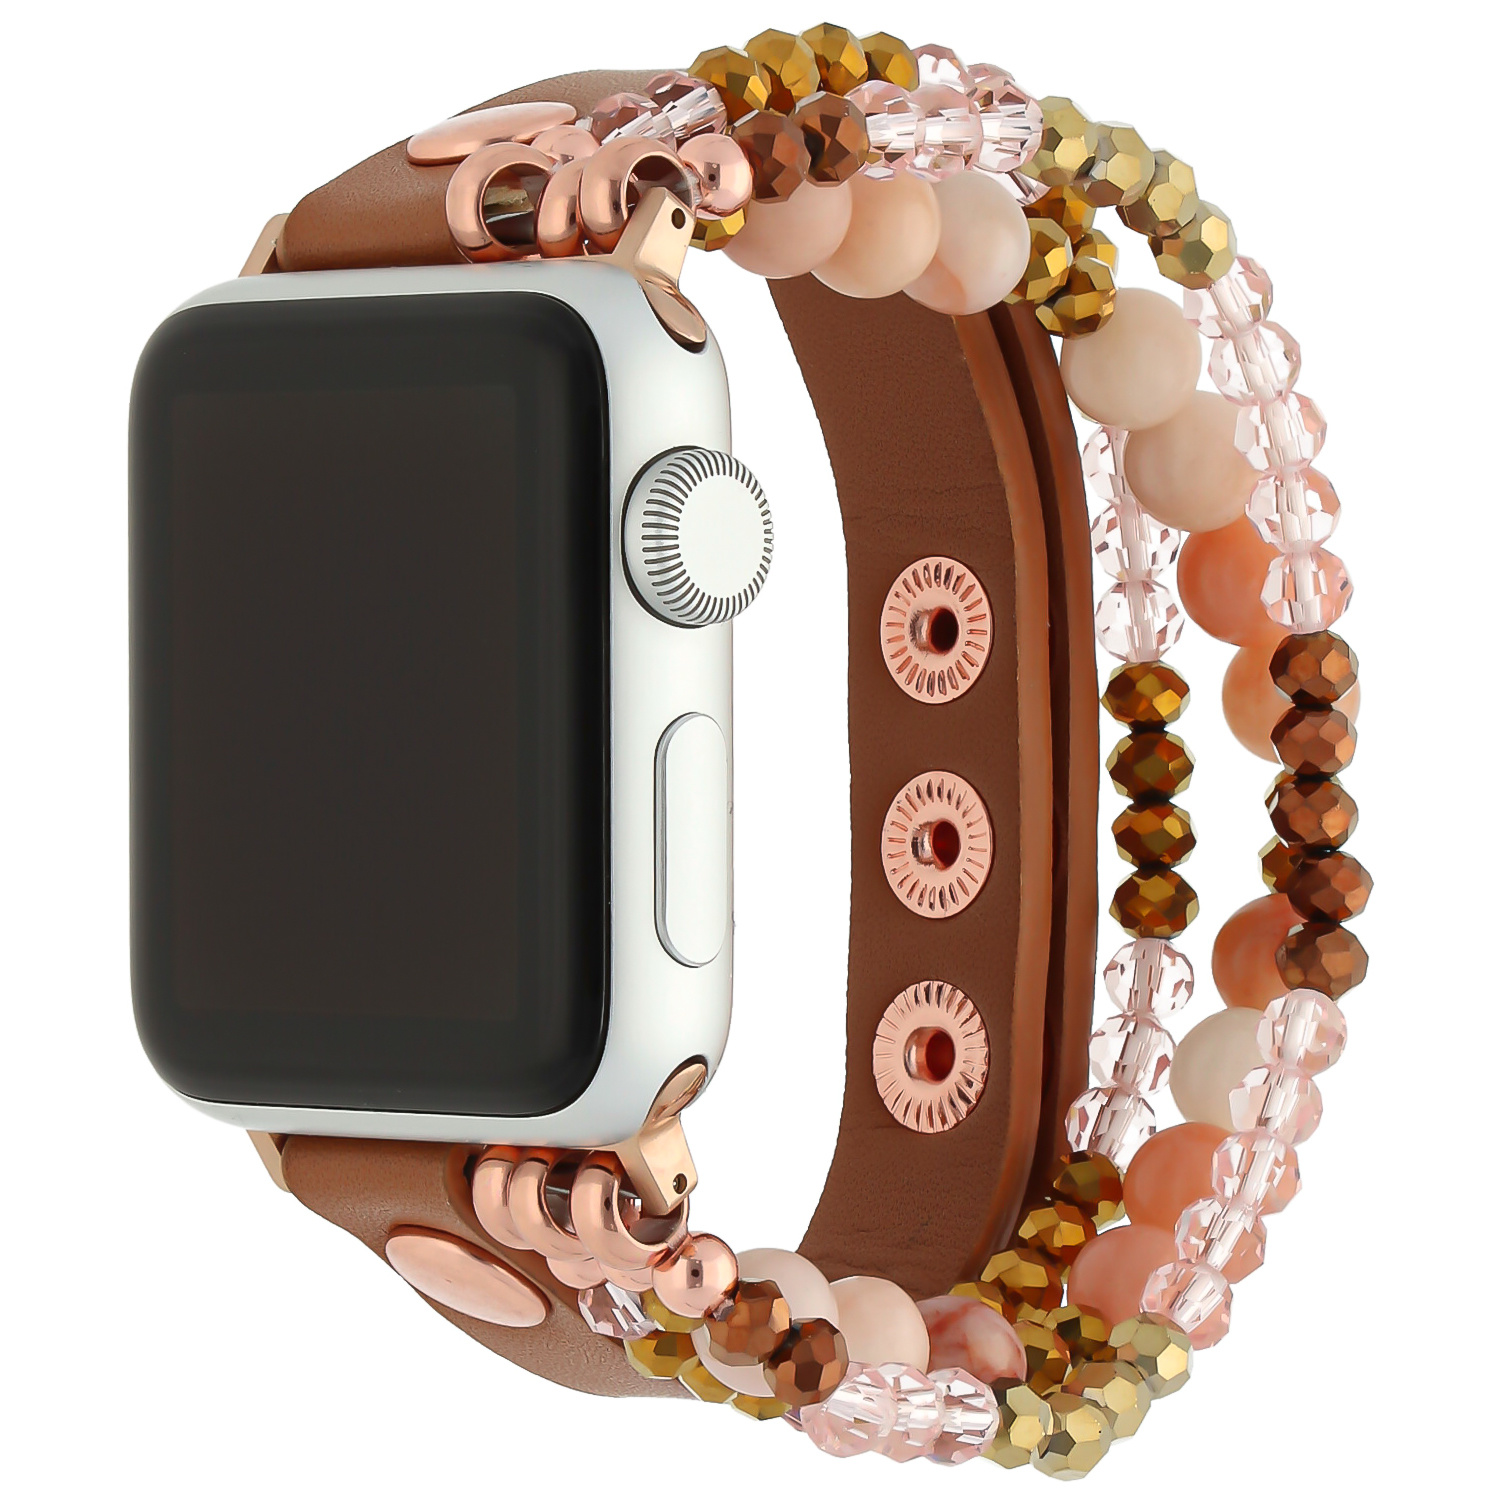 Correa de joyería de piel para el Apple Watch - marr√≥n